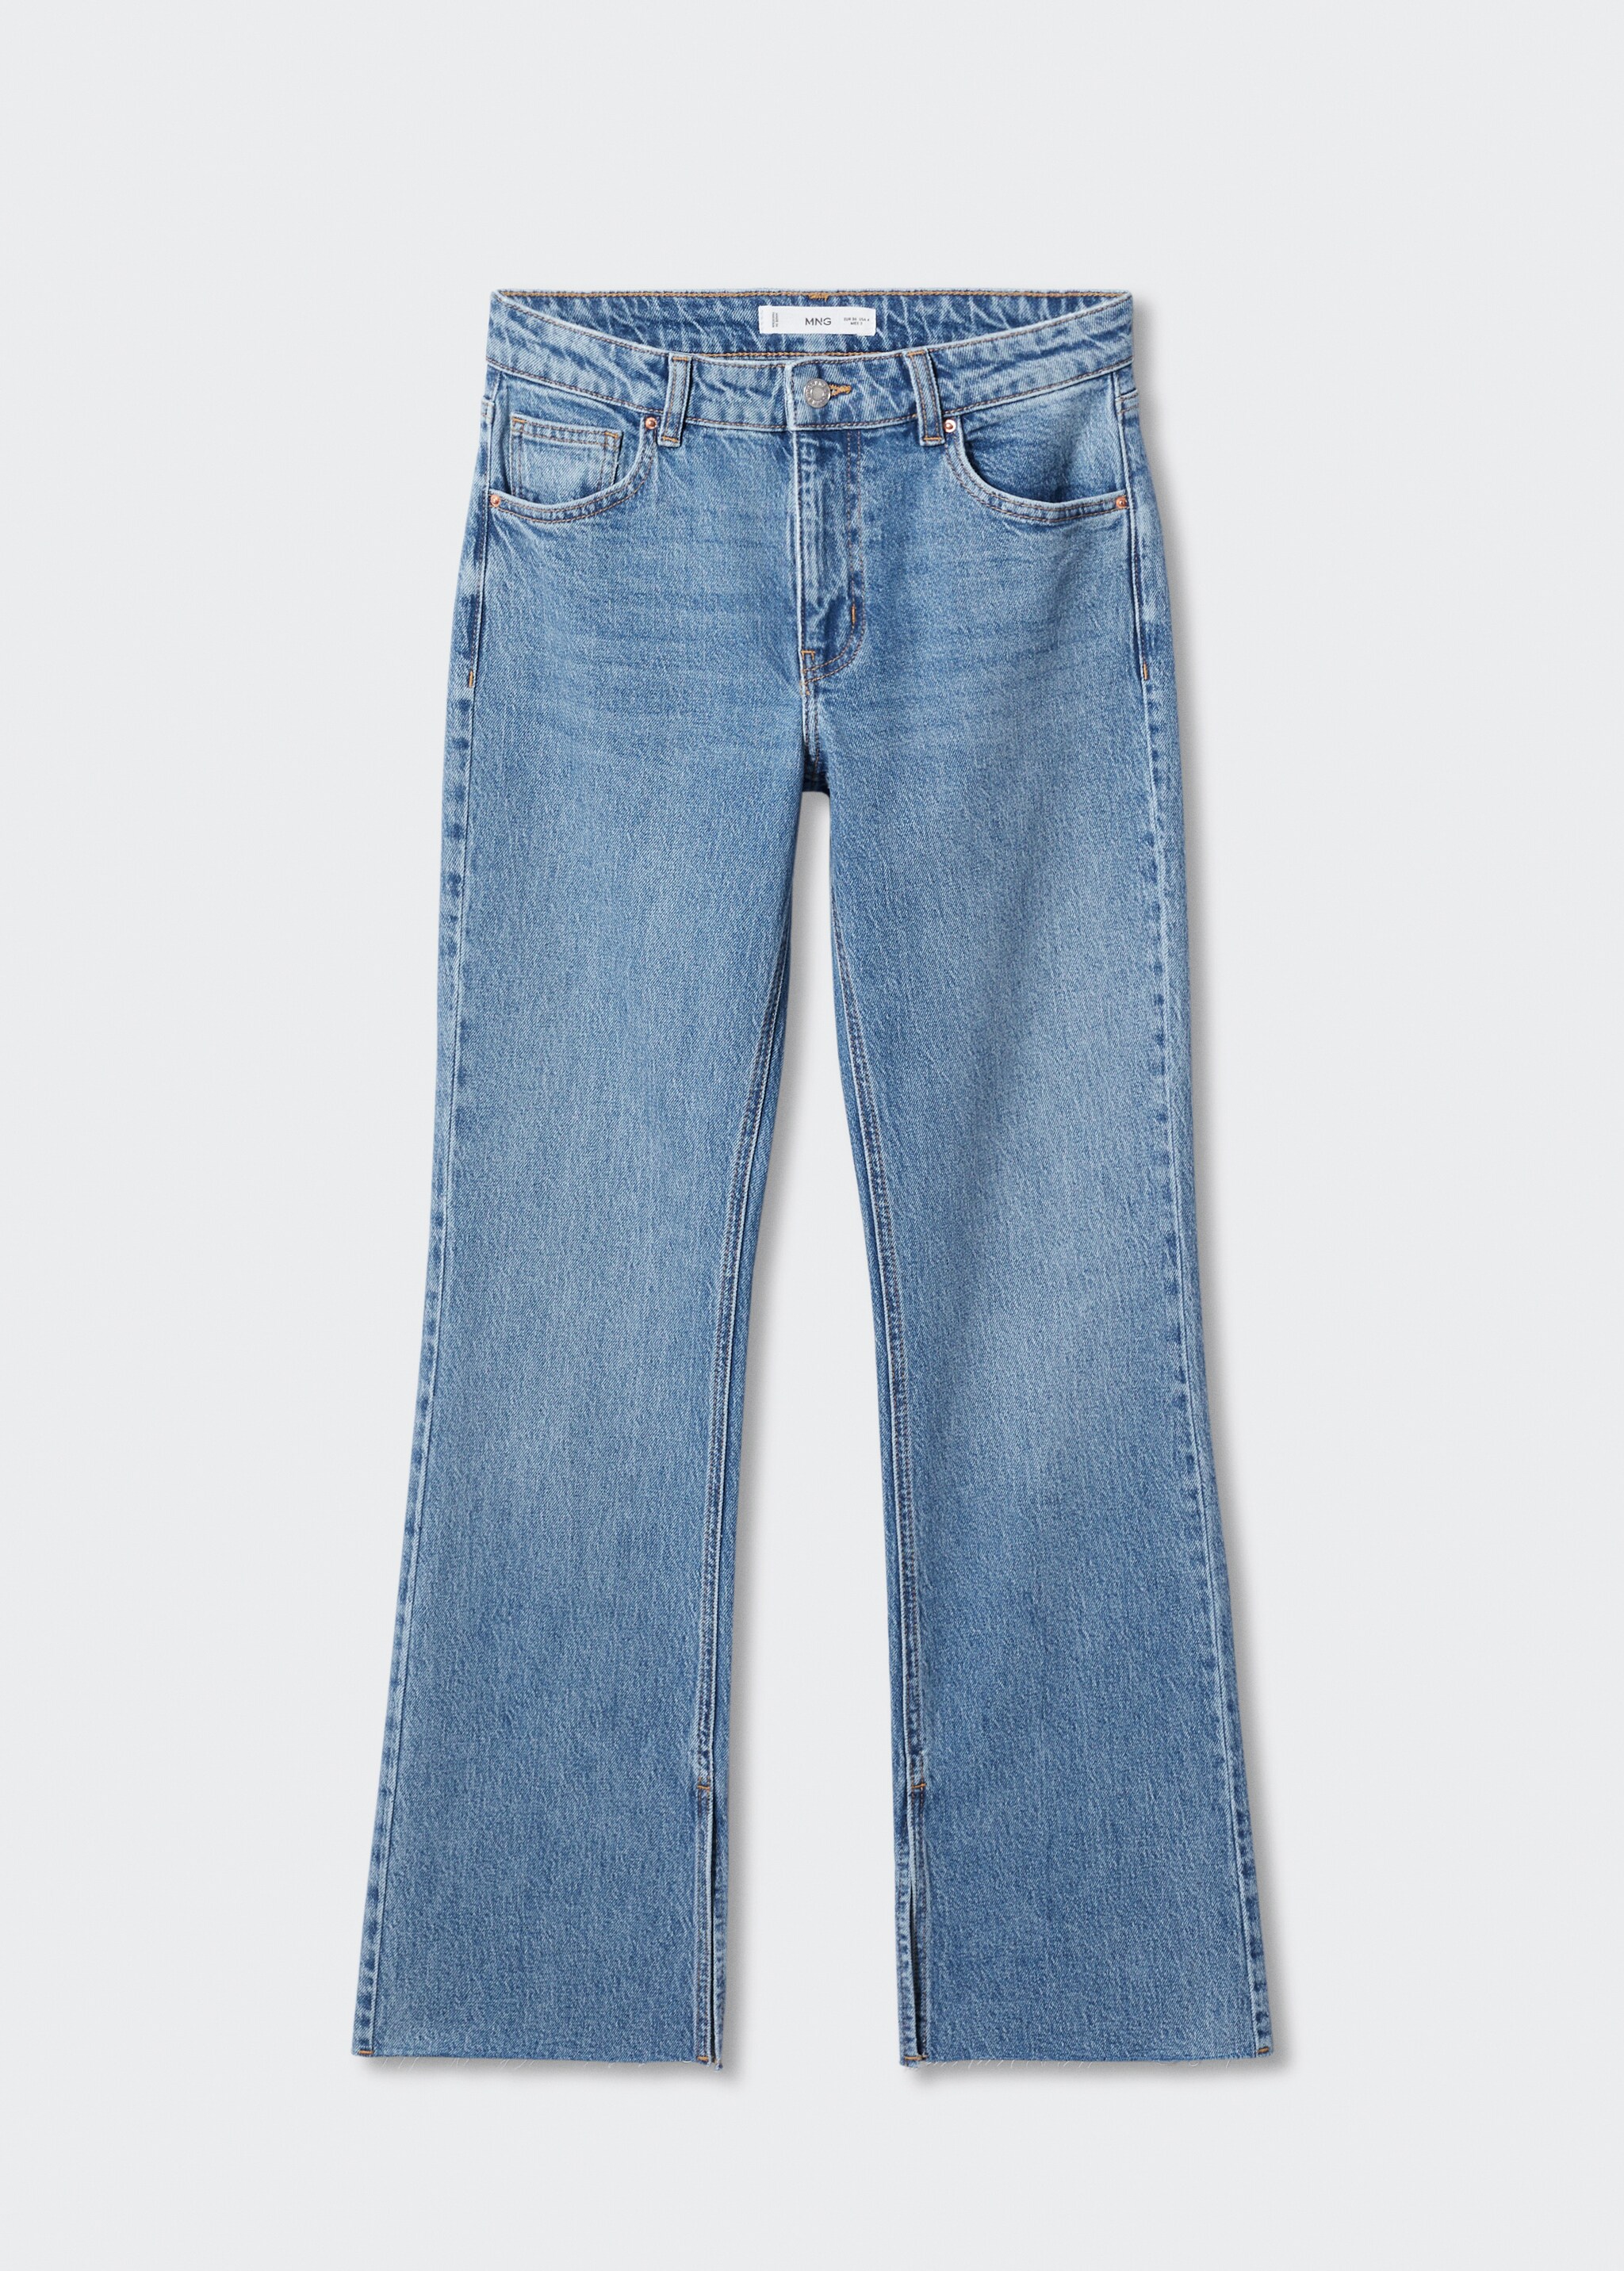 Jeans rectos tiro medio aberturas - Artículo sin modelo